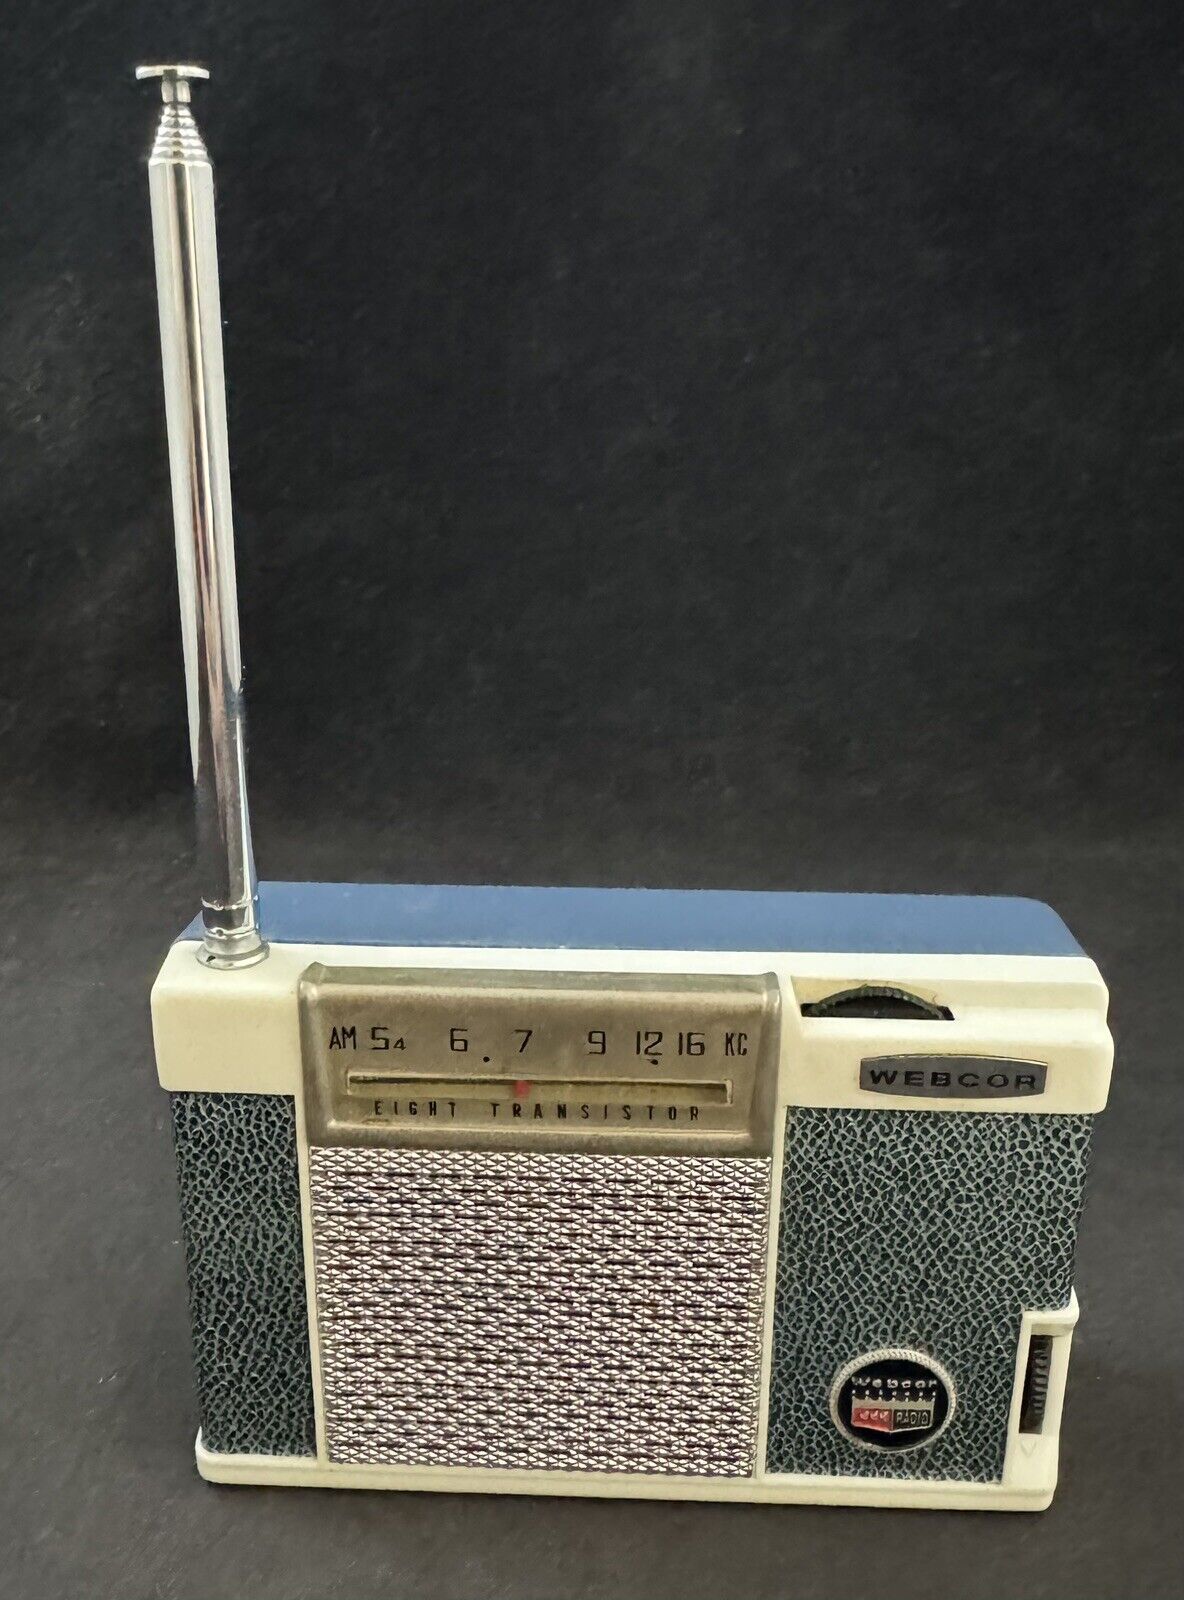 Vintage Webcor Transistor 8 Radio w/ Cover Case